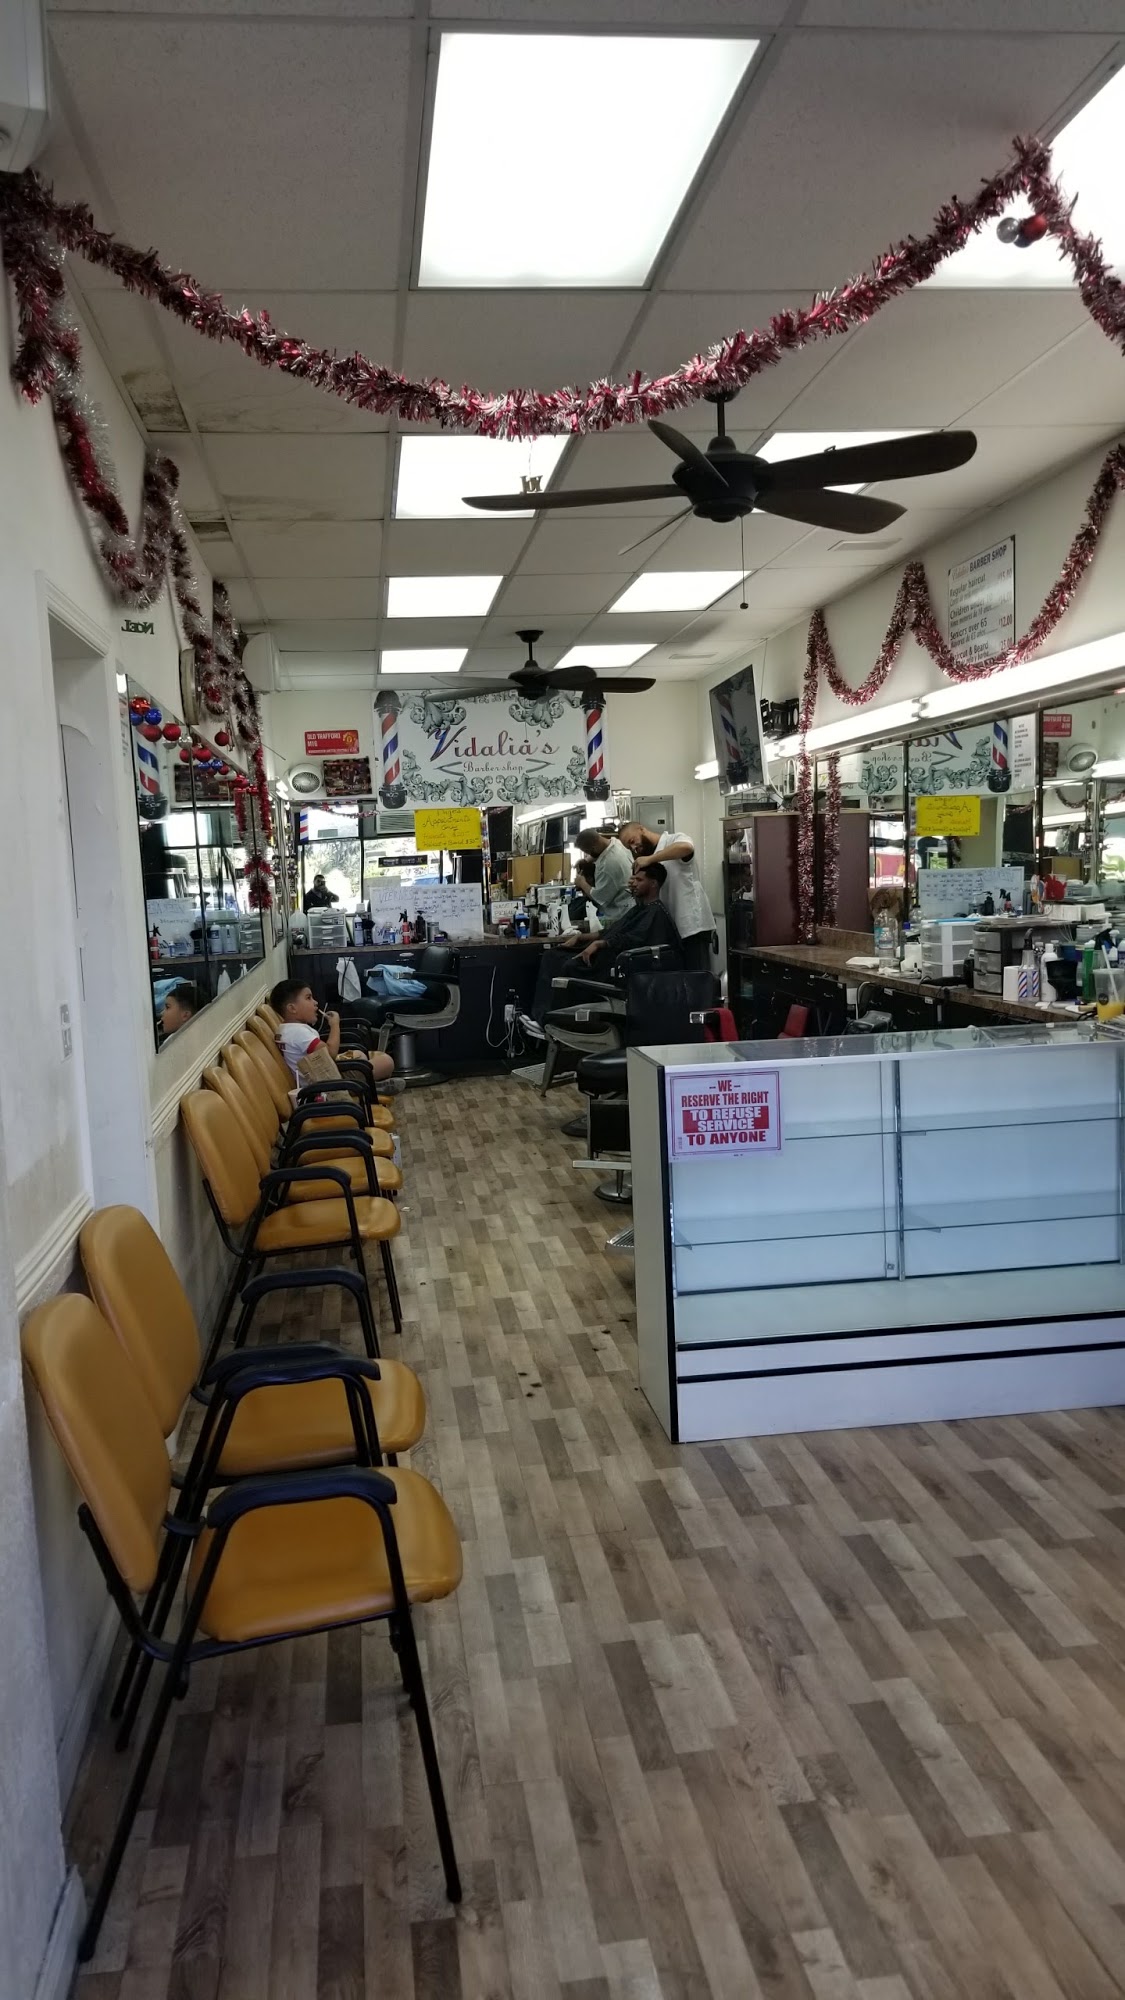 Vidalia's Barber & Beauty Shop